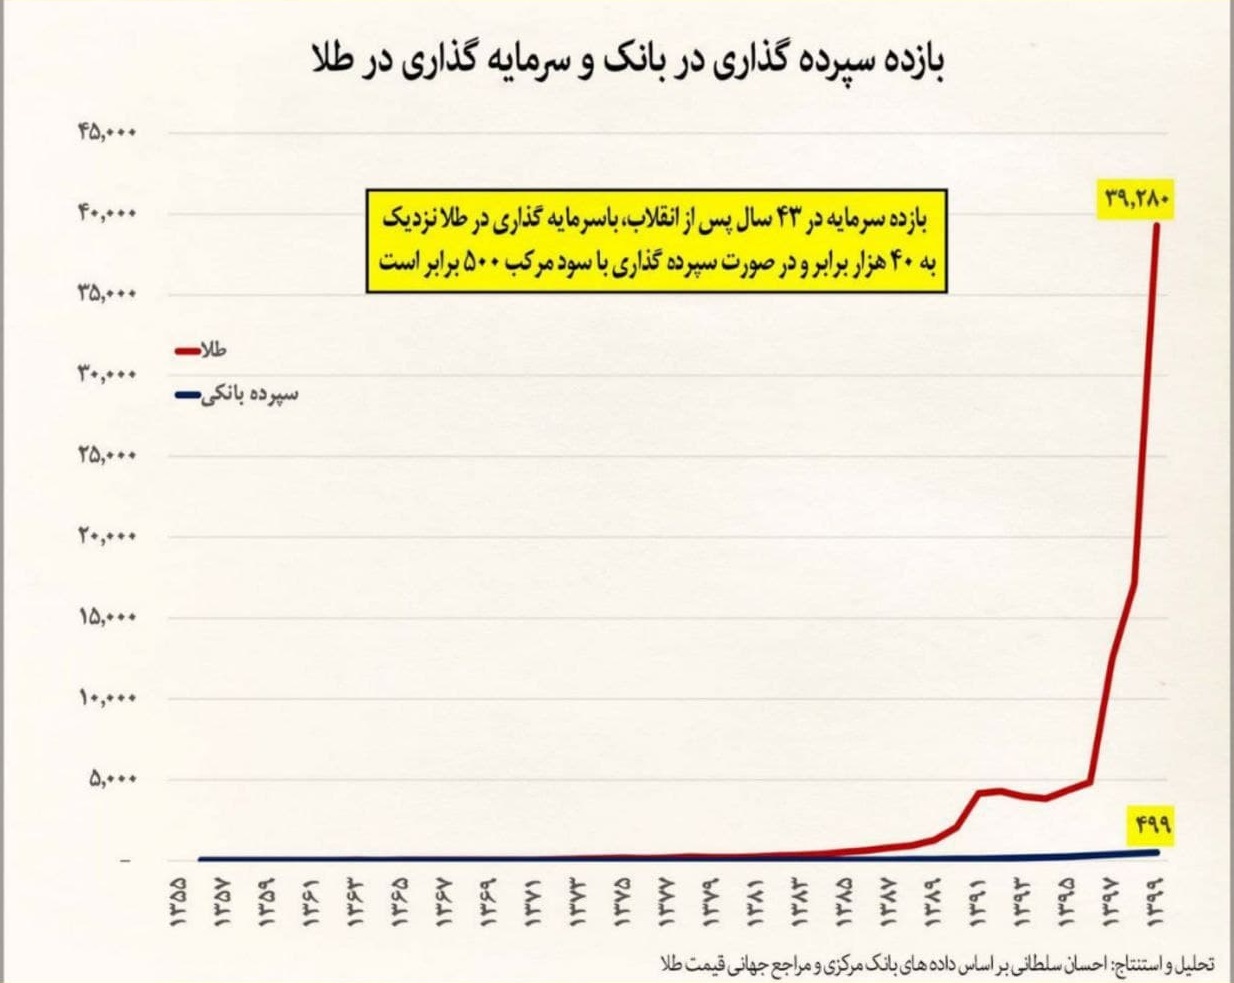 سپرده گذاران بانکی بزرگترین بازندگان اقتصاد ایران